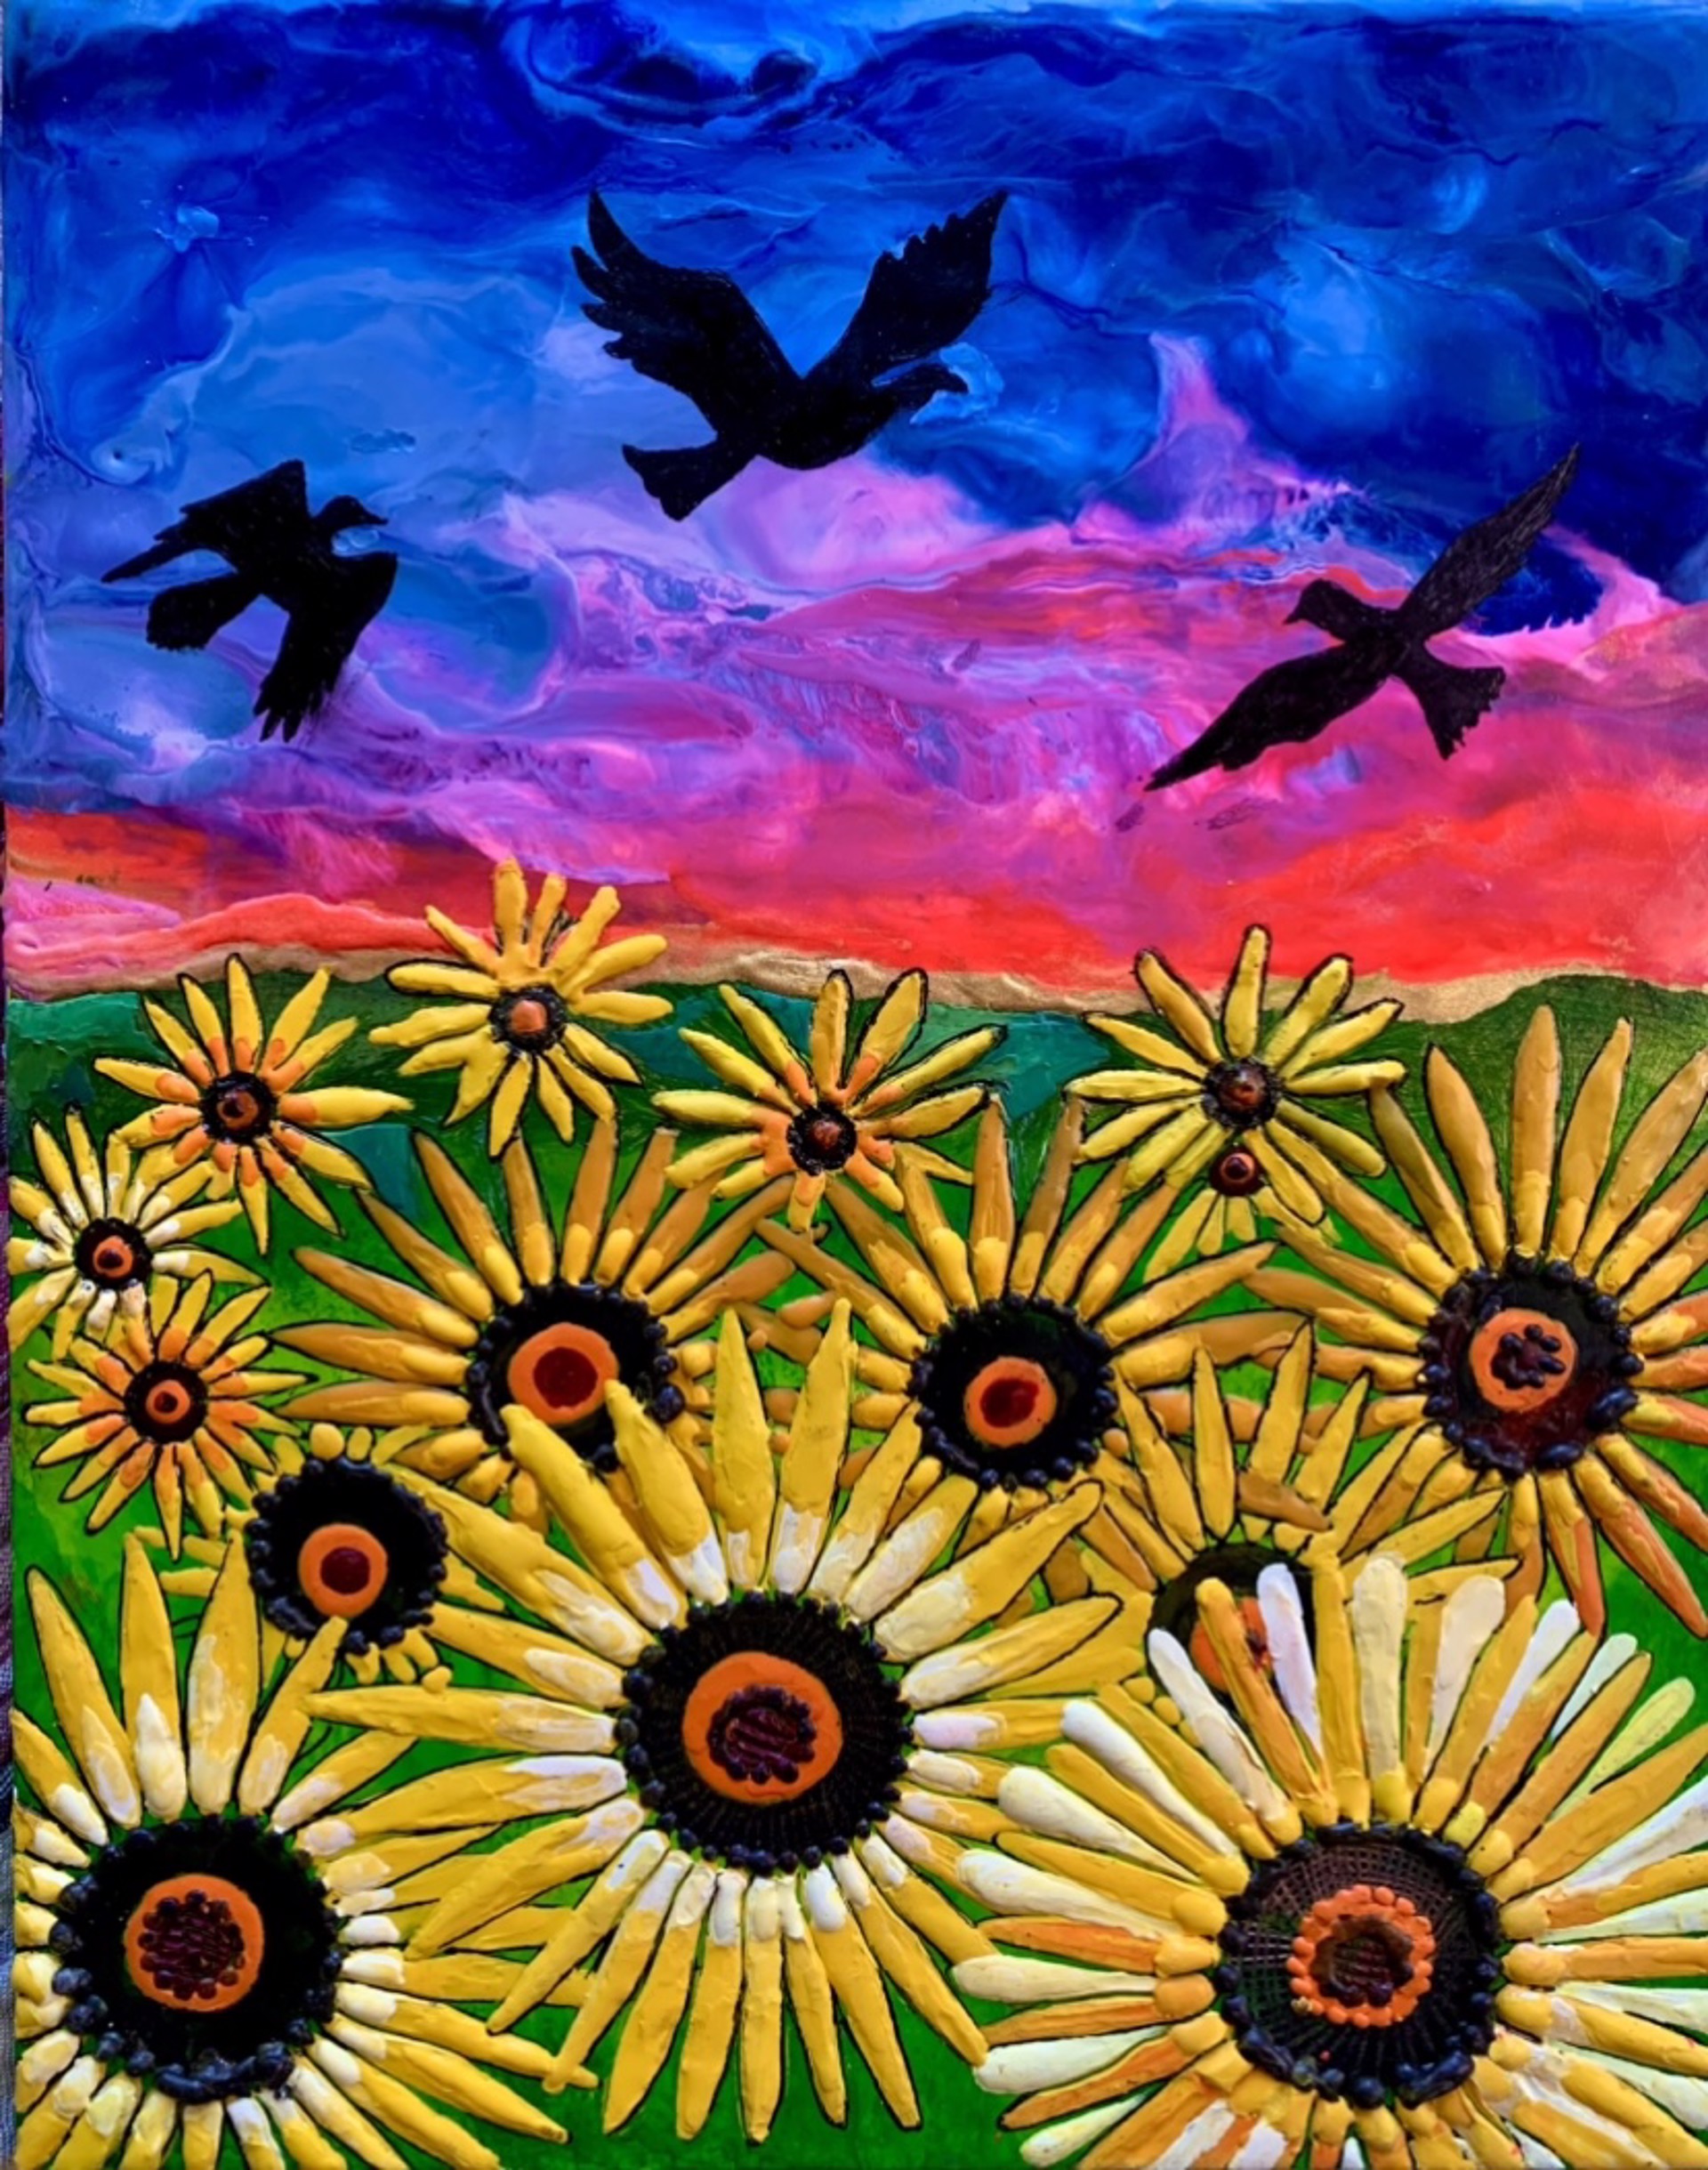 Field of Sunshine by Natalie Wetzel